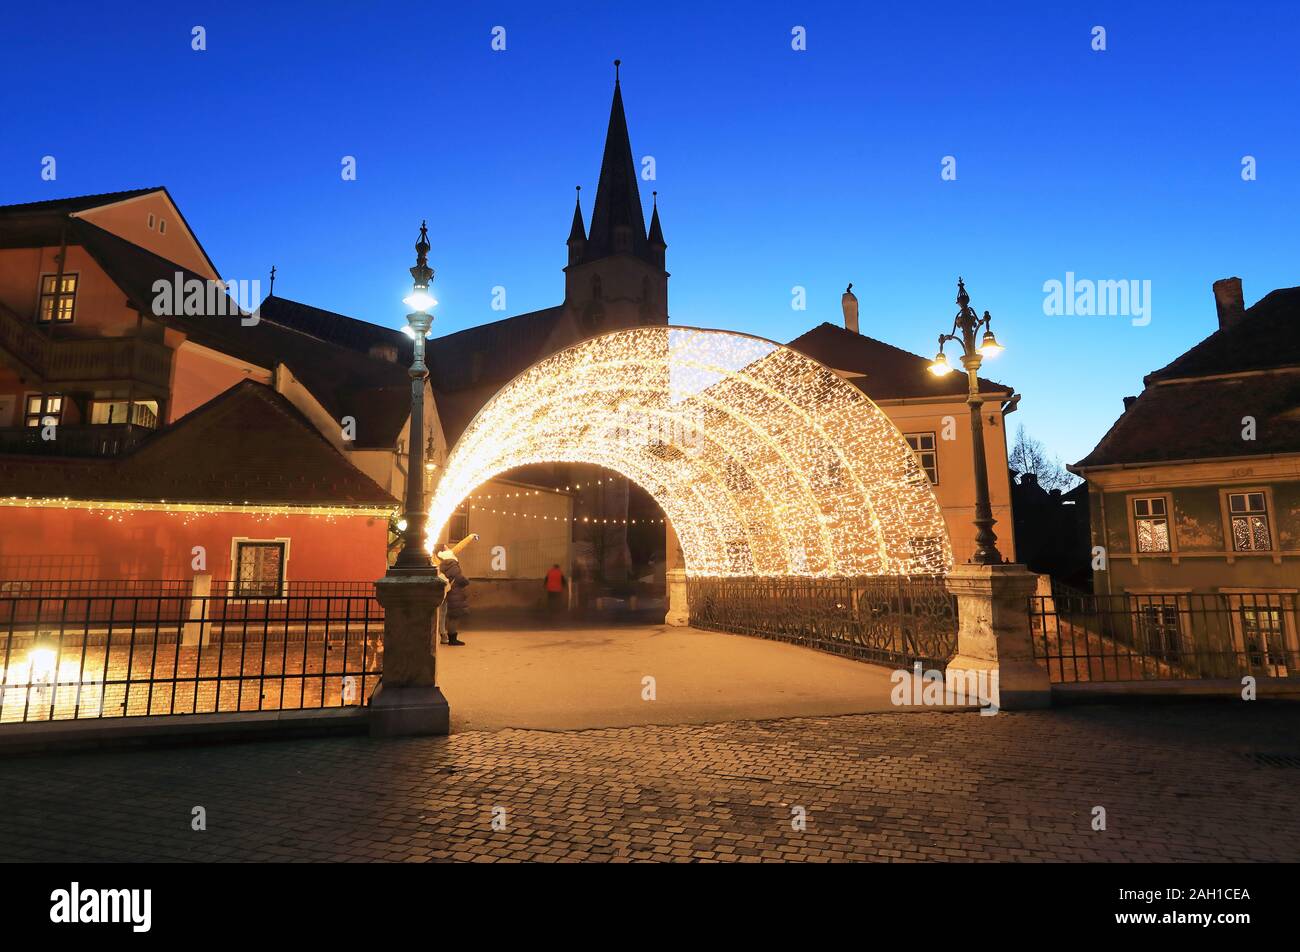 Le luci di Natale oltre il ponte di bugiardi in Sibiu vecchia, in Transilvania, Romania Foto Stock